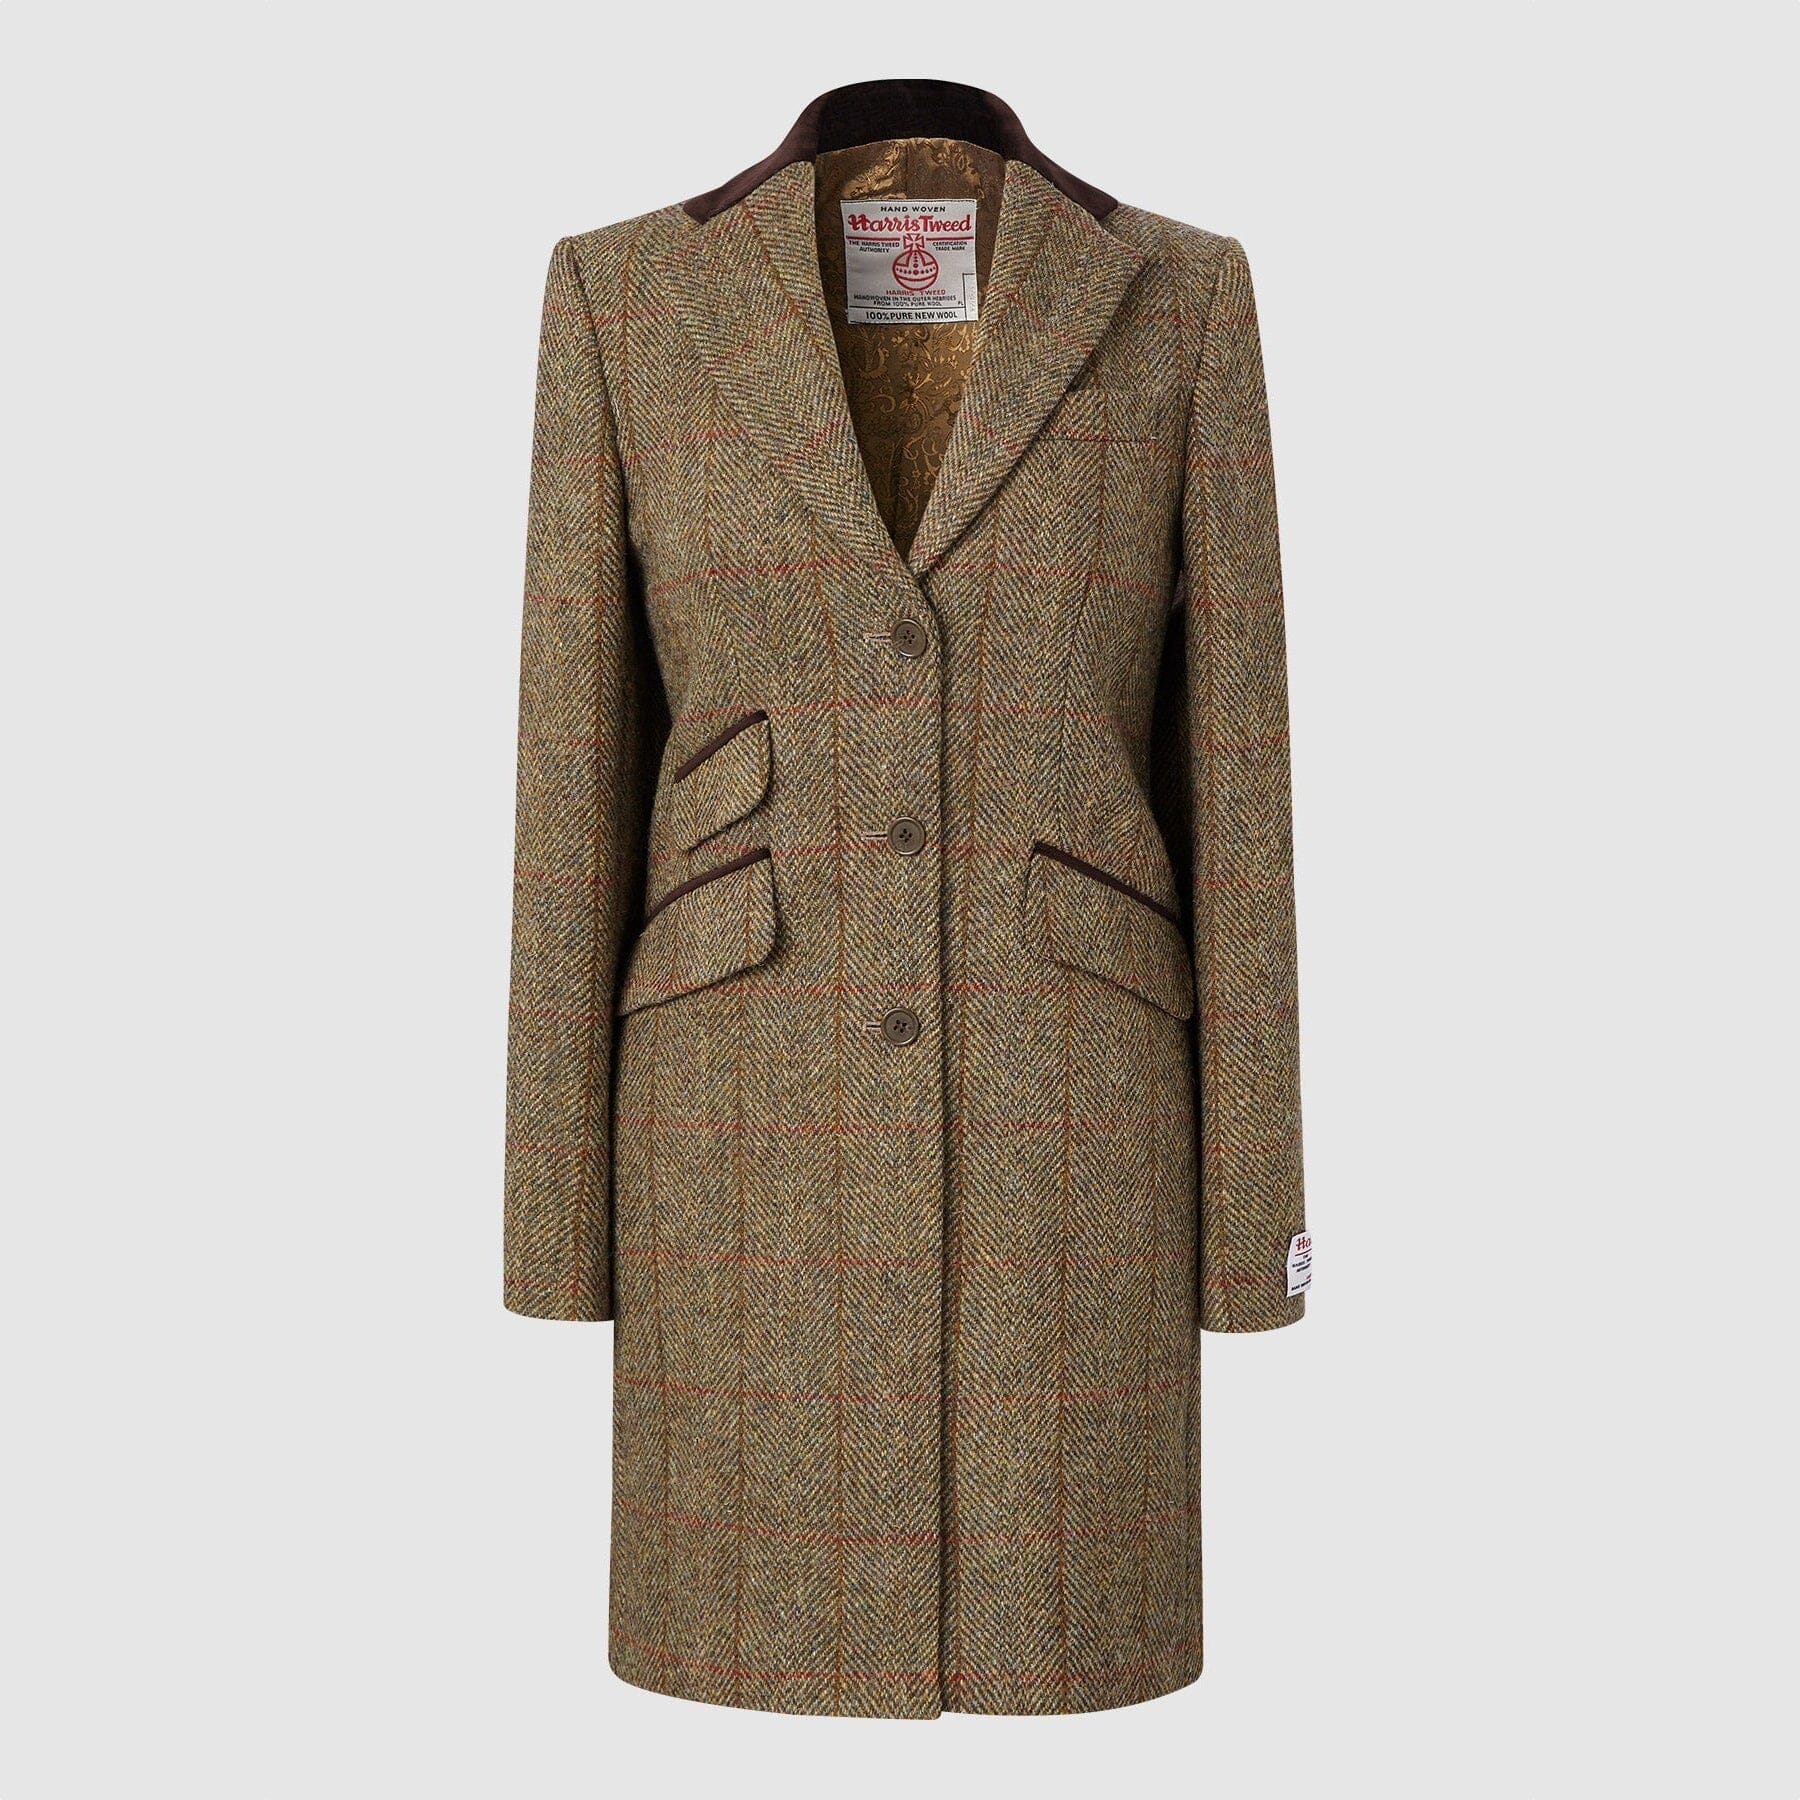 Se Tori 3/4 Ladies Coat frakke af Harris Tweed, mustard - 12 (M) hos Godsejeren